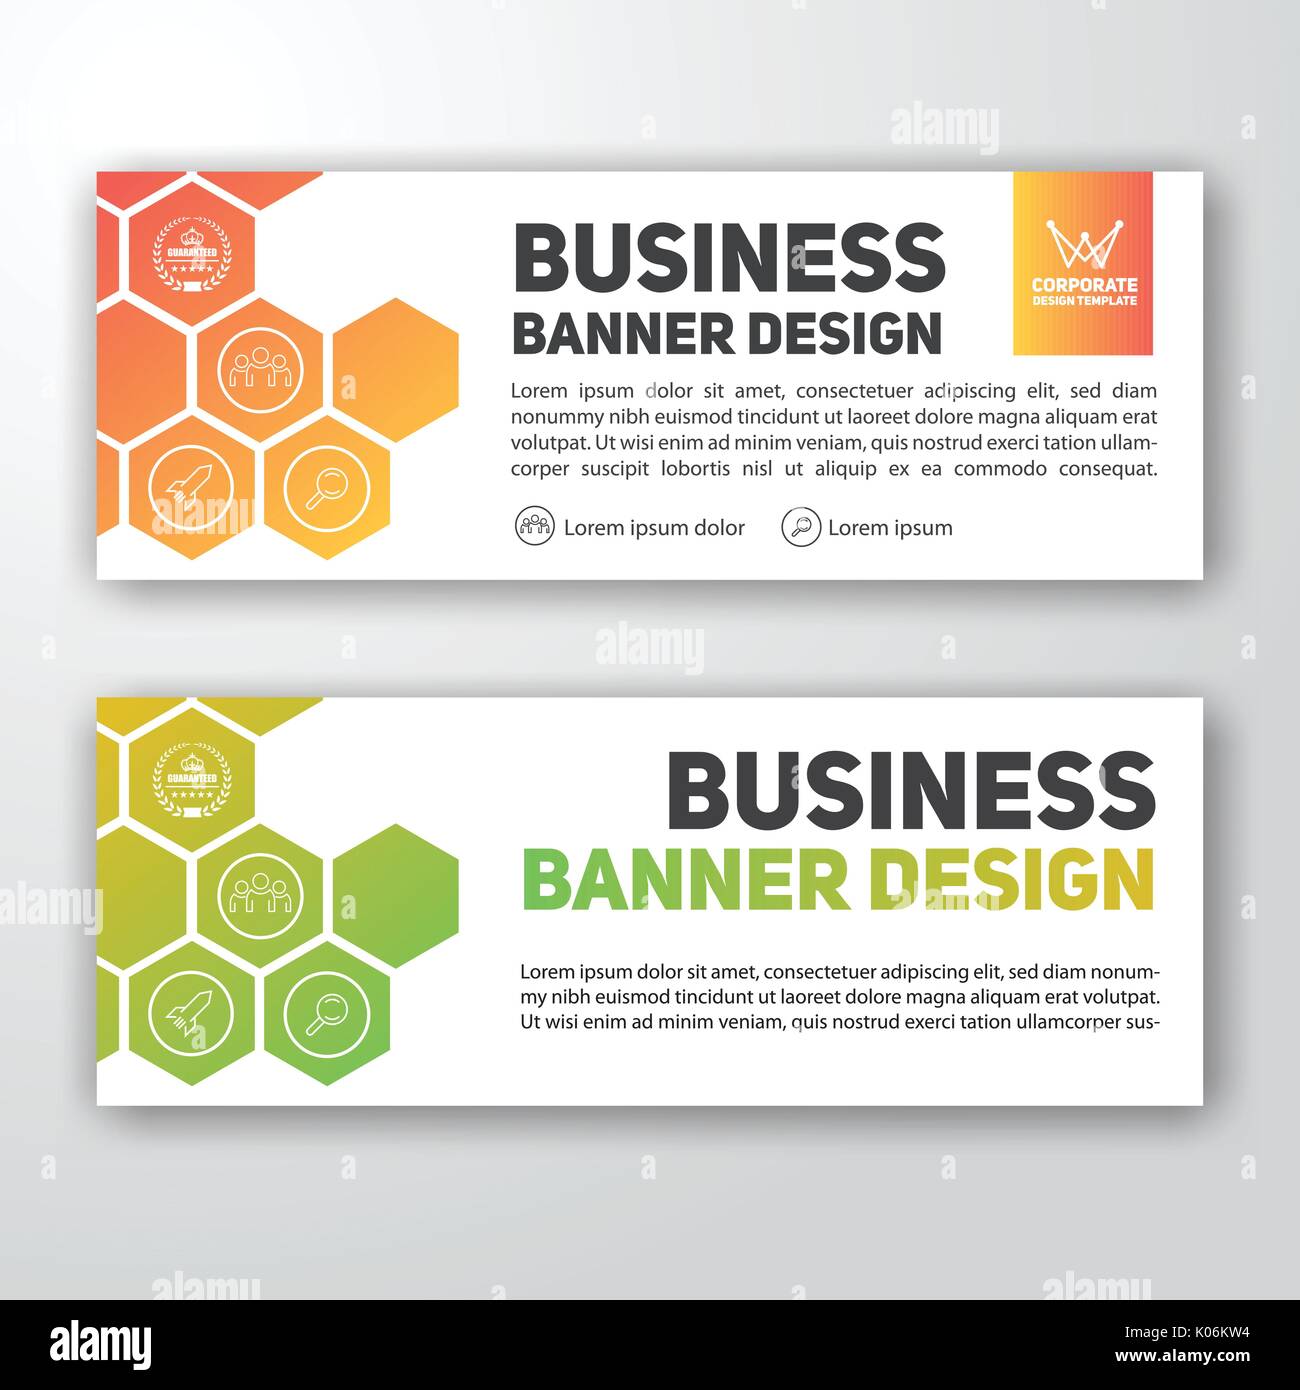 Moderne Corporate banner Hintergrund Design für Briefkopfpapier, Belegkopf, Web Banner. Vector Illustration Stock Vektor